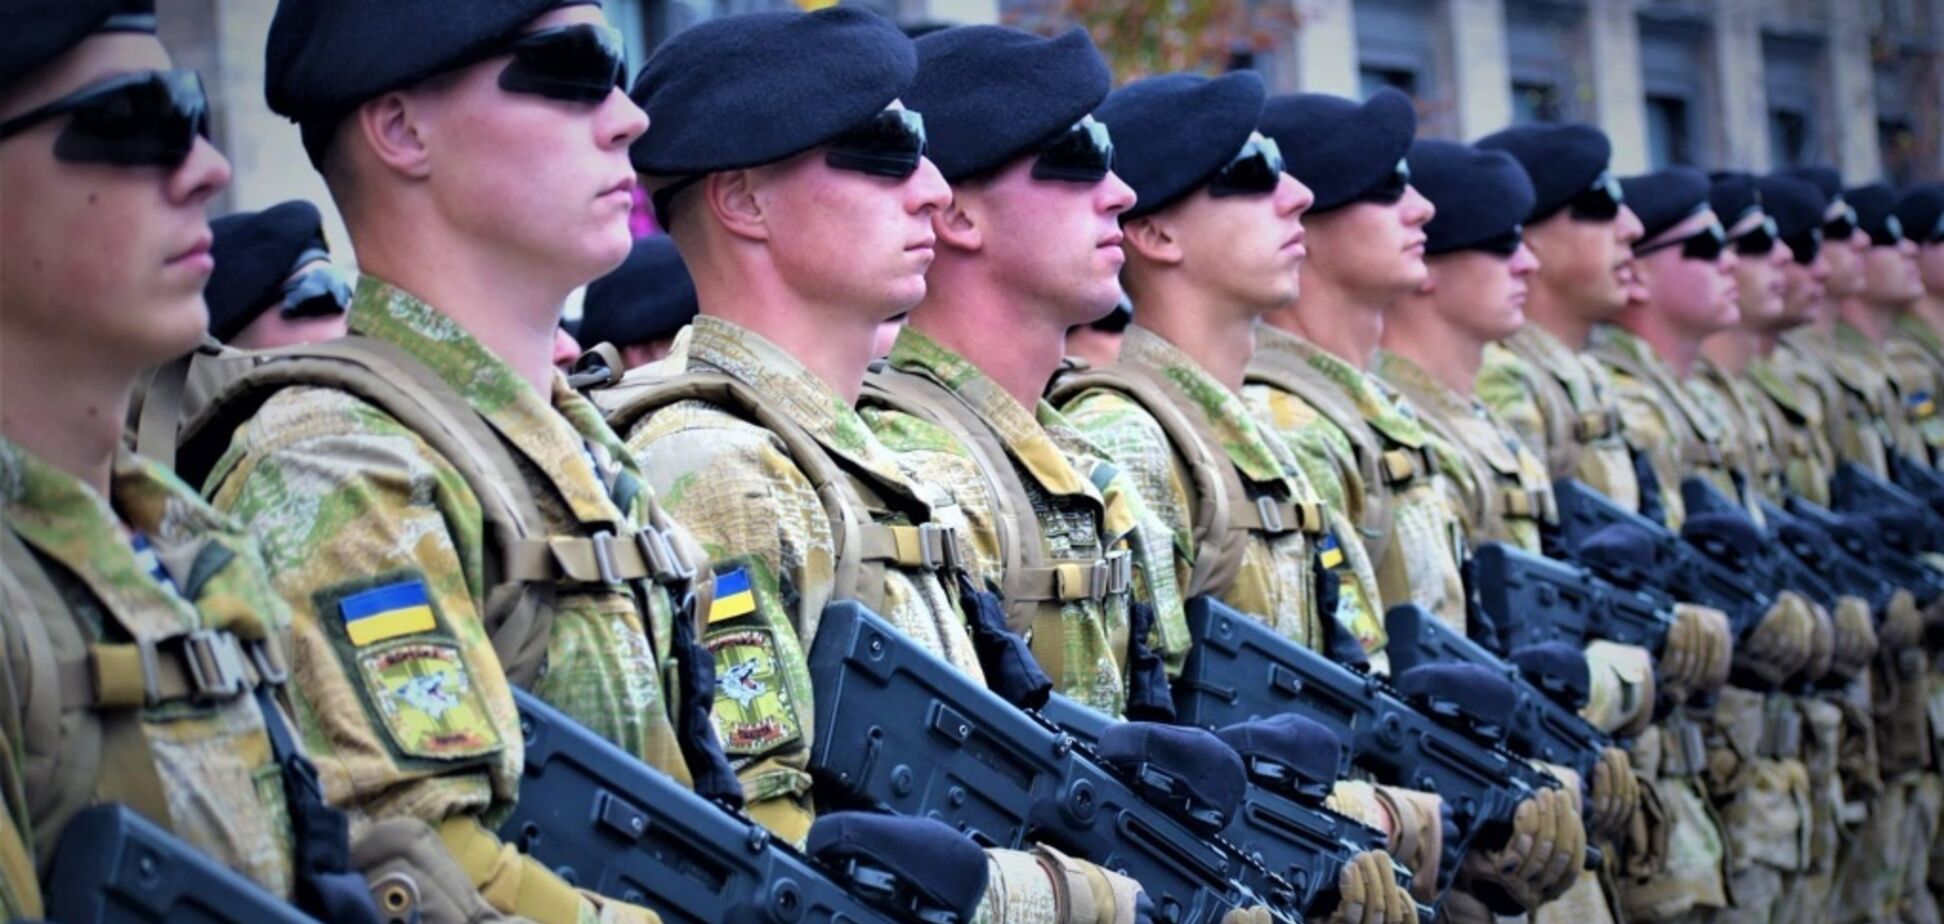 Скільки США витратили на армію України за п'ять років: озвучено суму